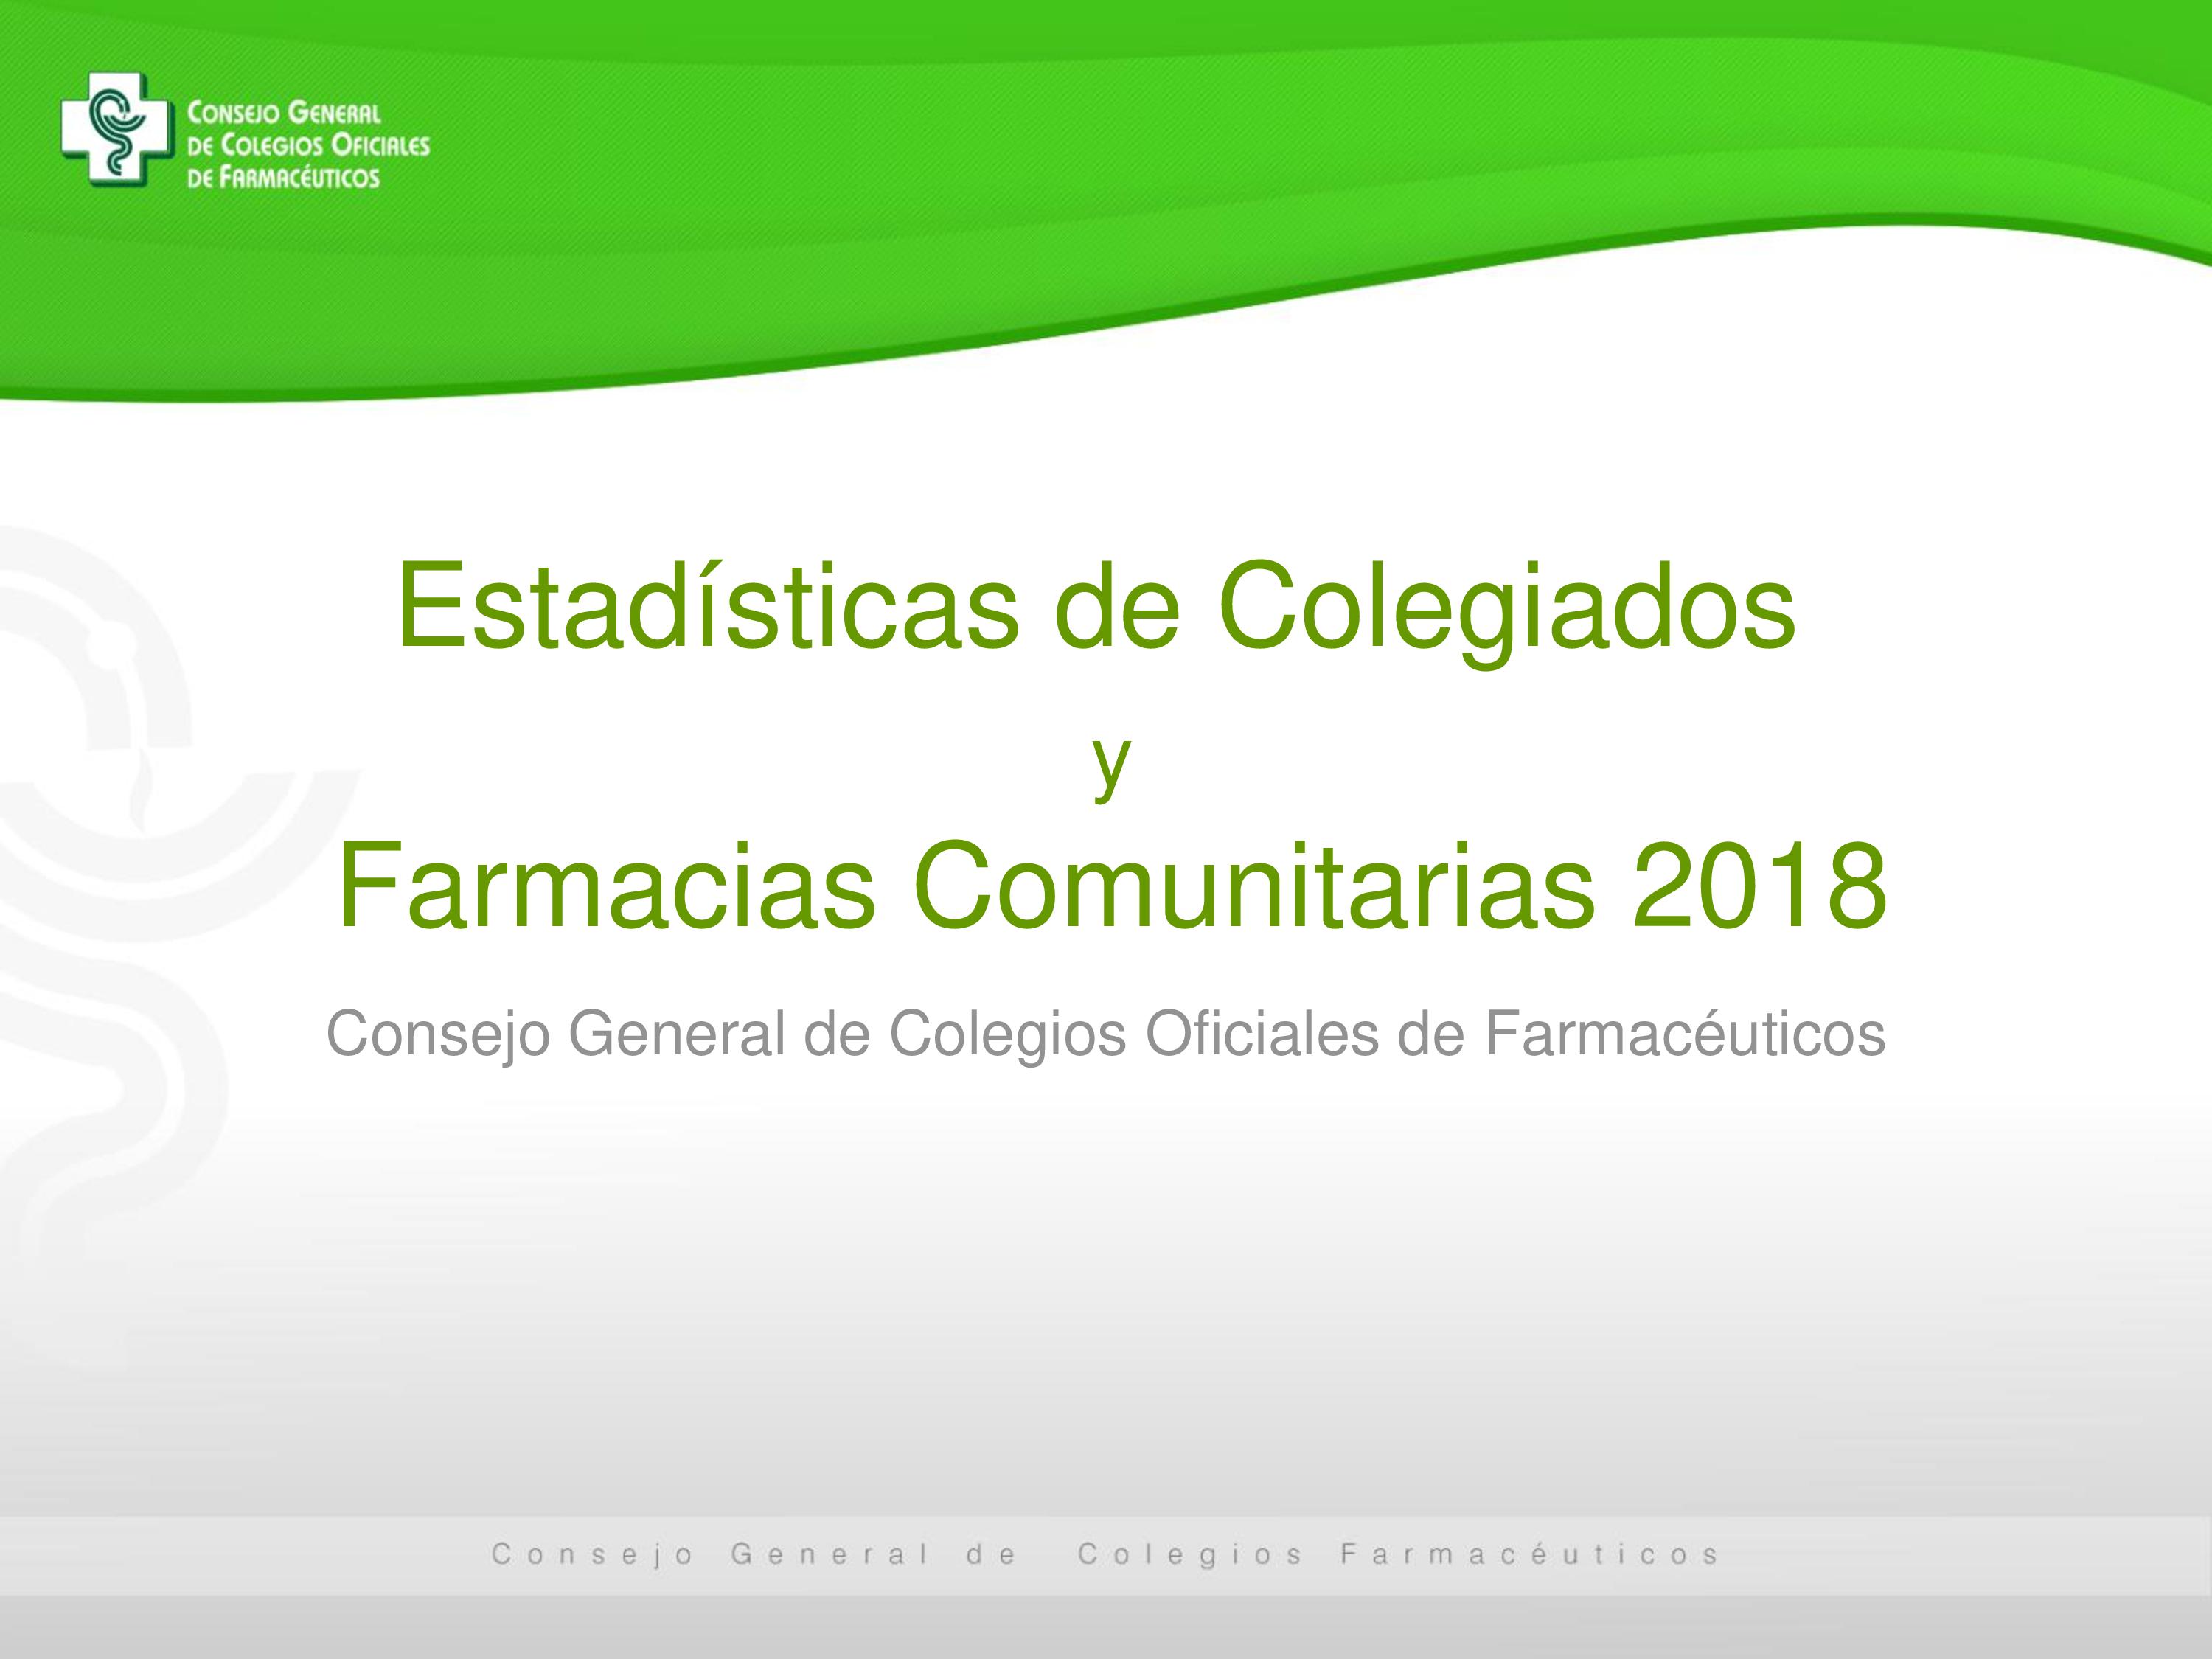 Estadísticas de Colegiados y Farmacias Comunitarias 2018